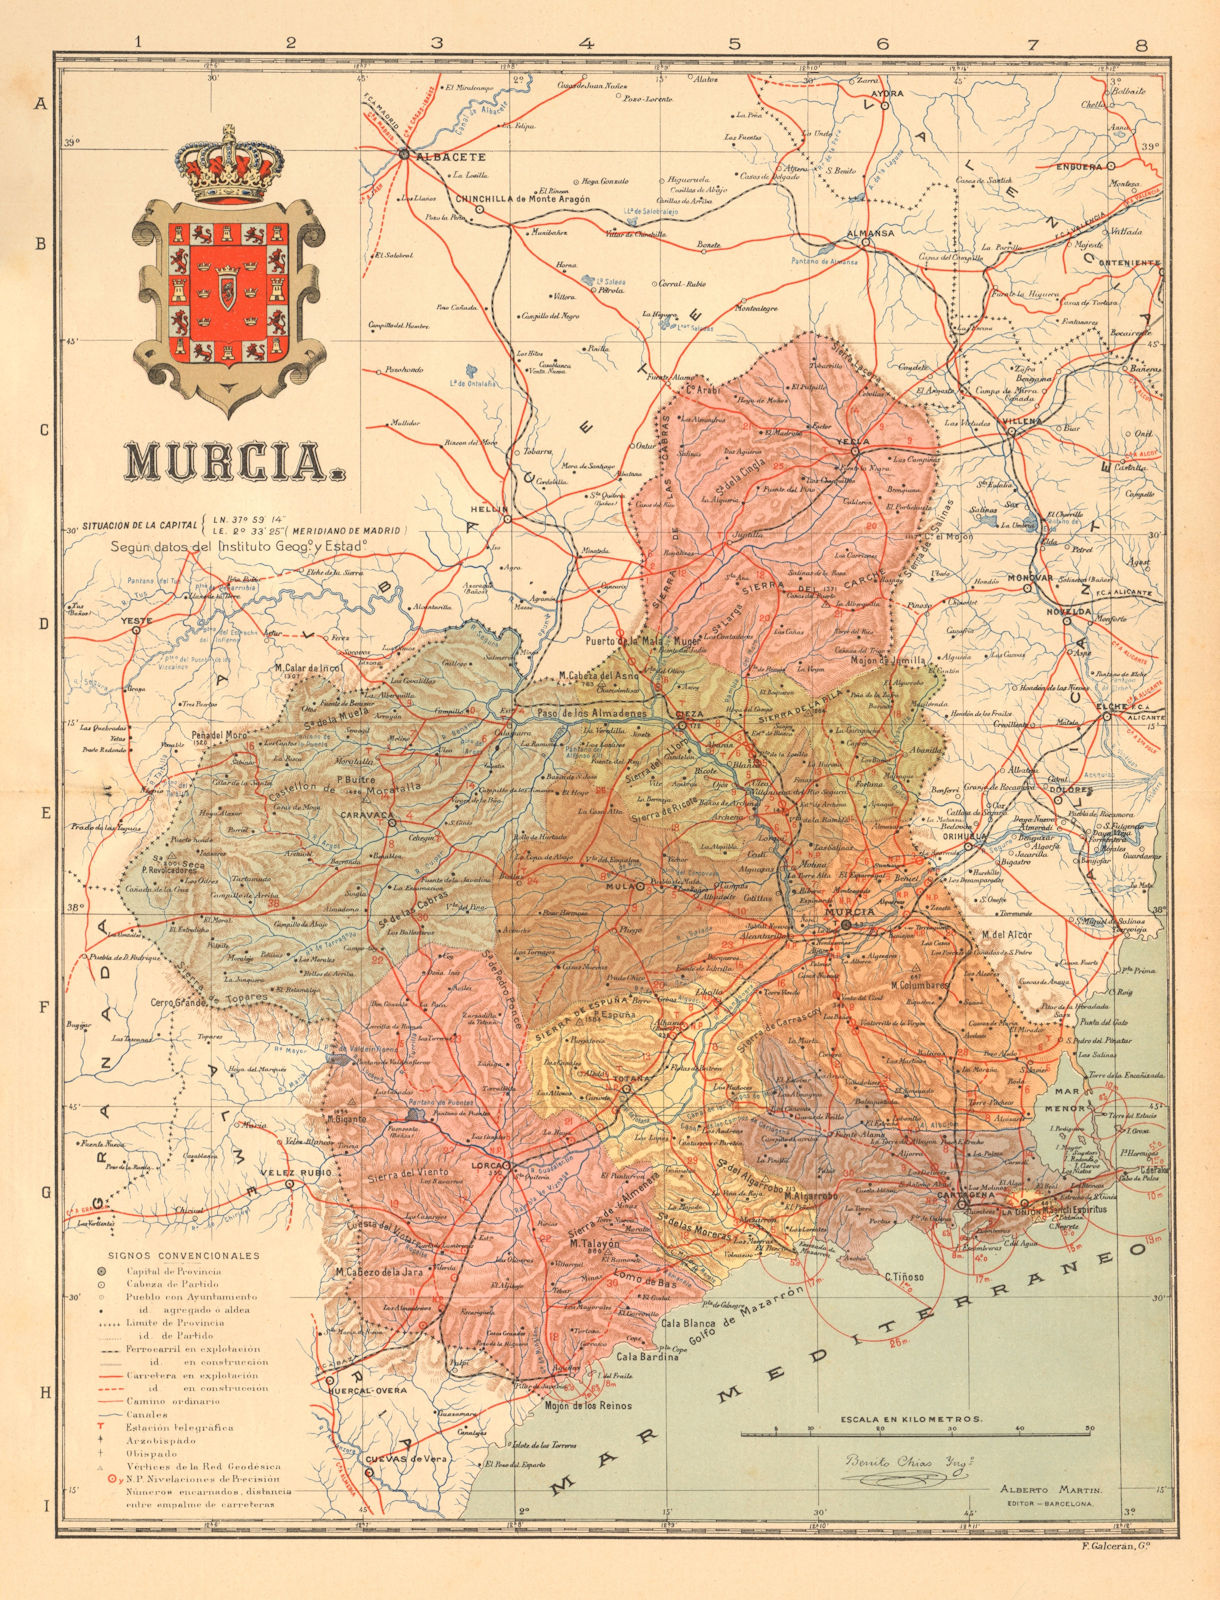 MURCIA. Region of Murcia. Mapa antiguo de la provincia. ALBERTO MARTIN c1911